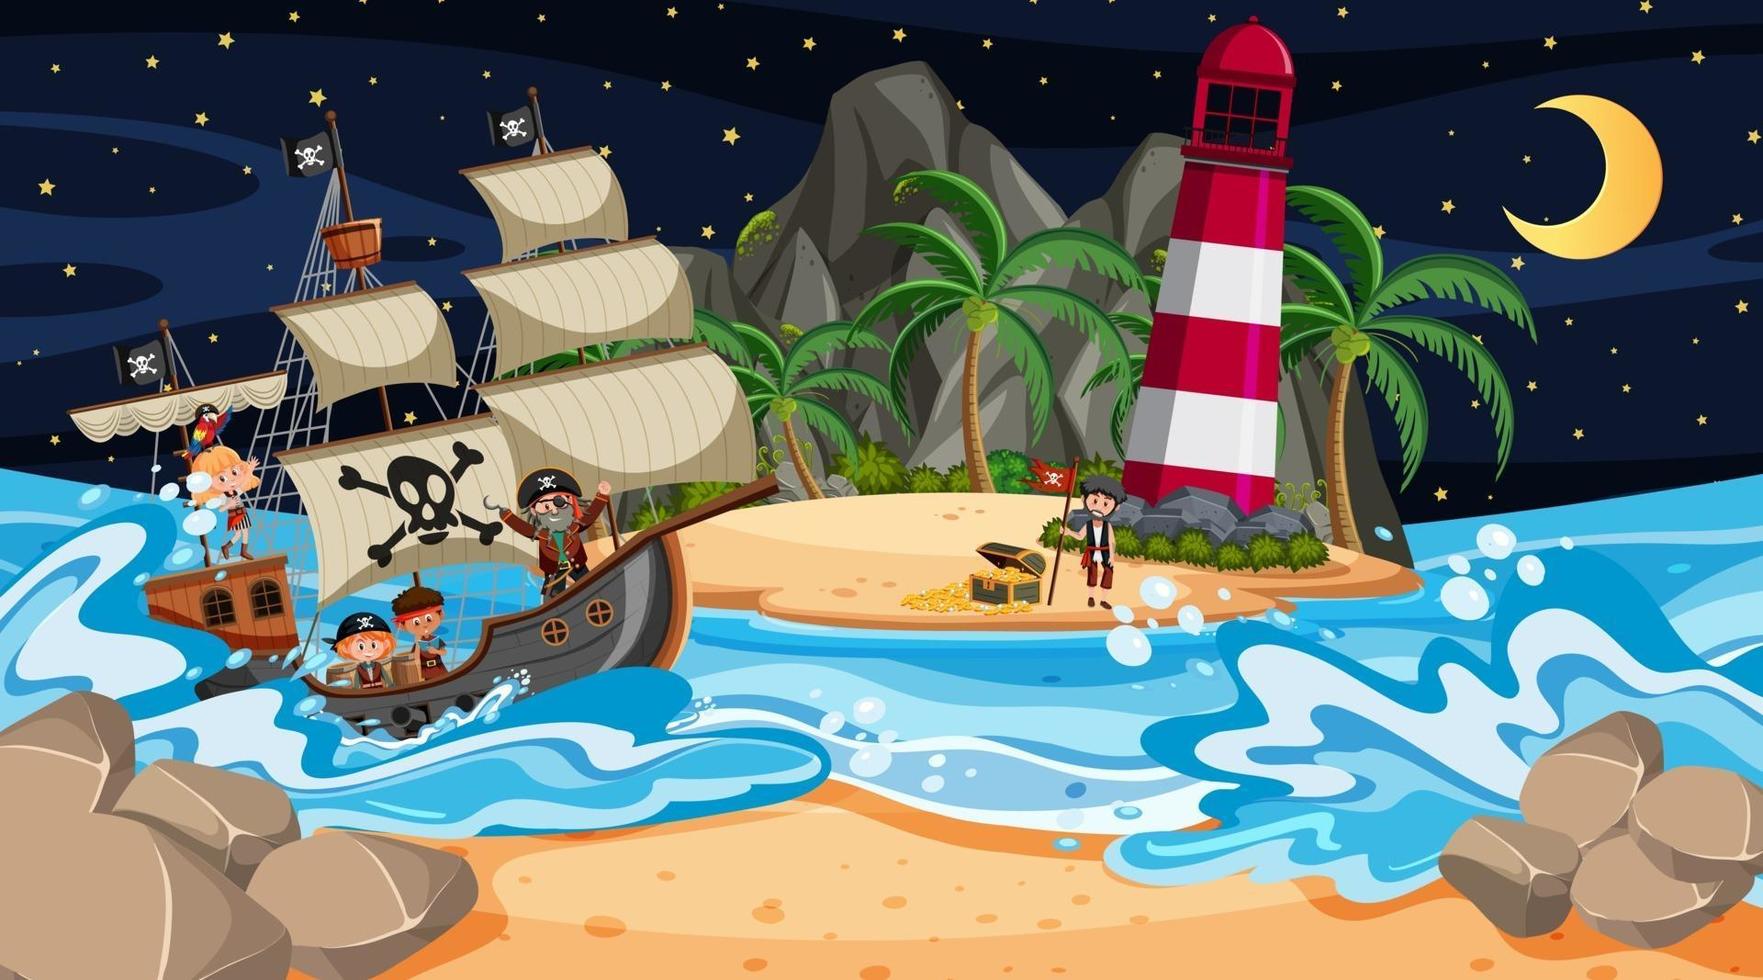 praia com navio pirata em cena noturna em estilo cartoon vetor